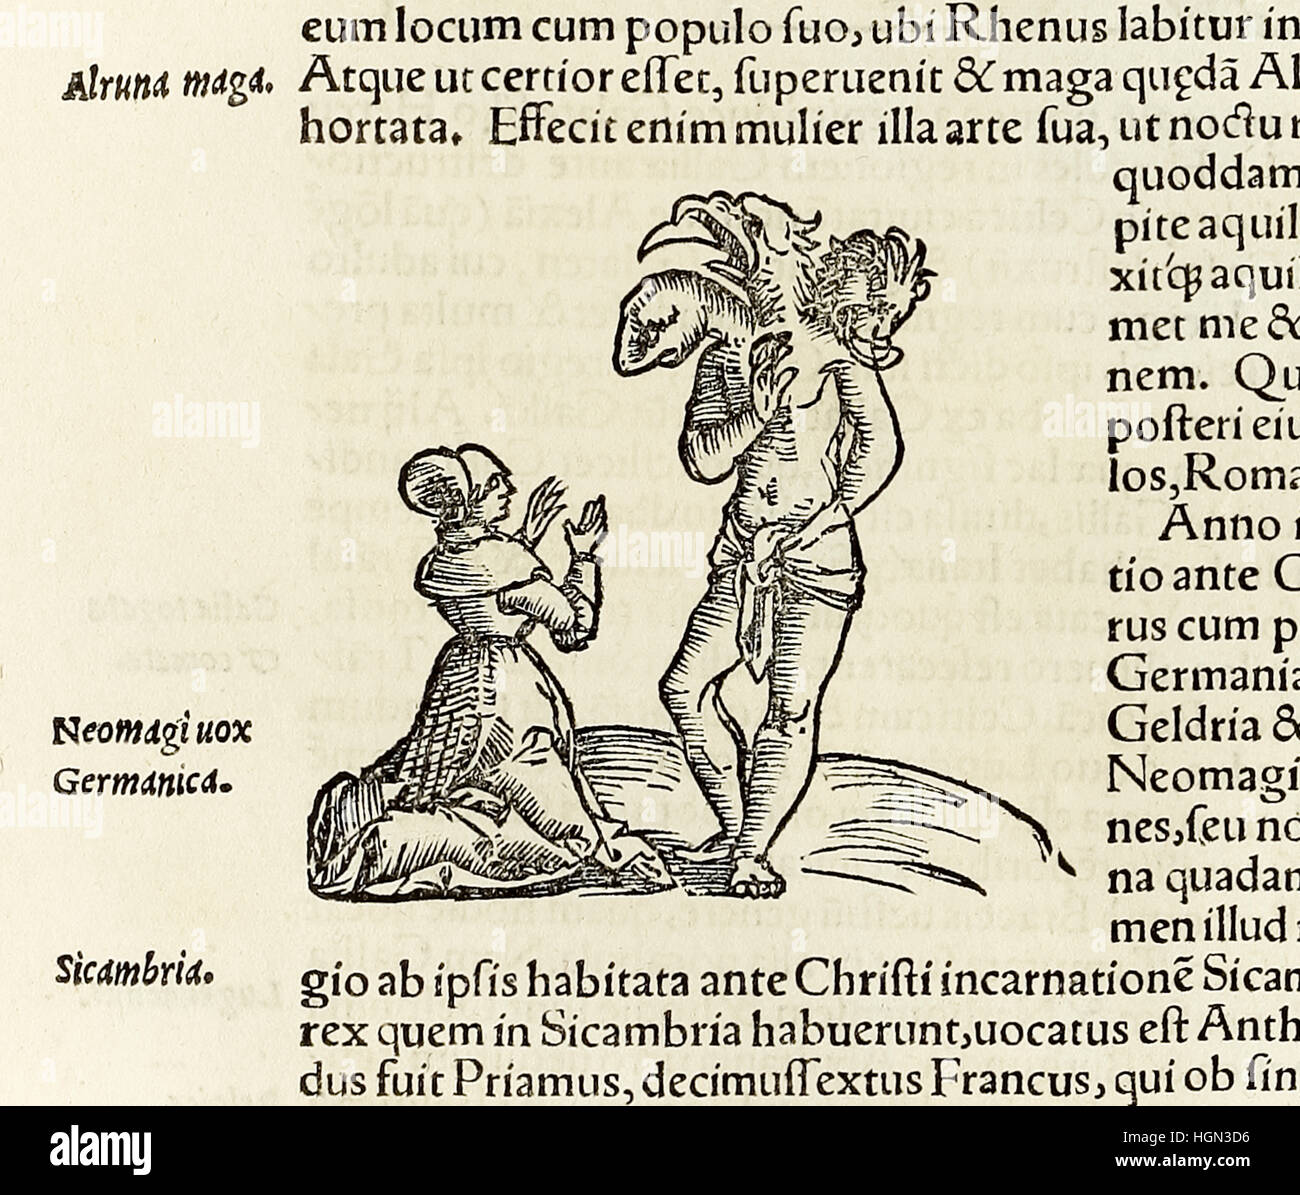 Une sorcière invoque un démon dirigé trois, gravure sur bois de 1550 édition de "Cosmographia" par Sebastian Munster (1488-1552). Voir la description pour plus d'informations. Banque D'Images